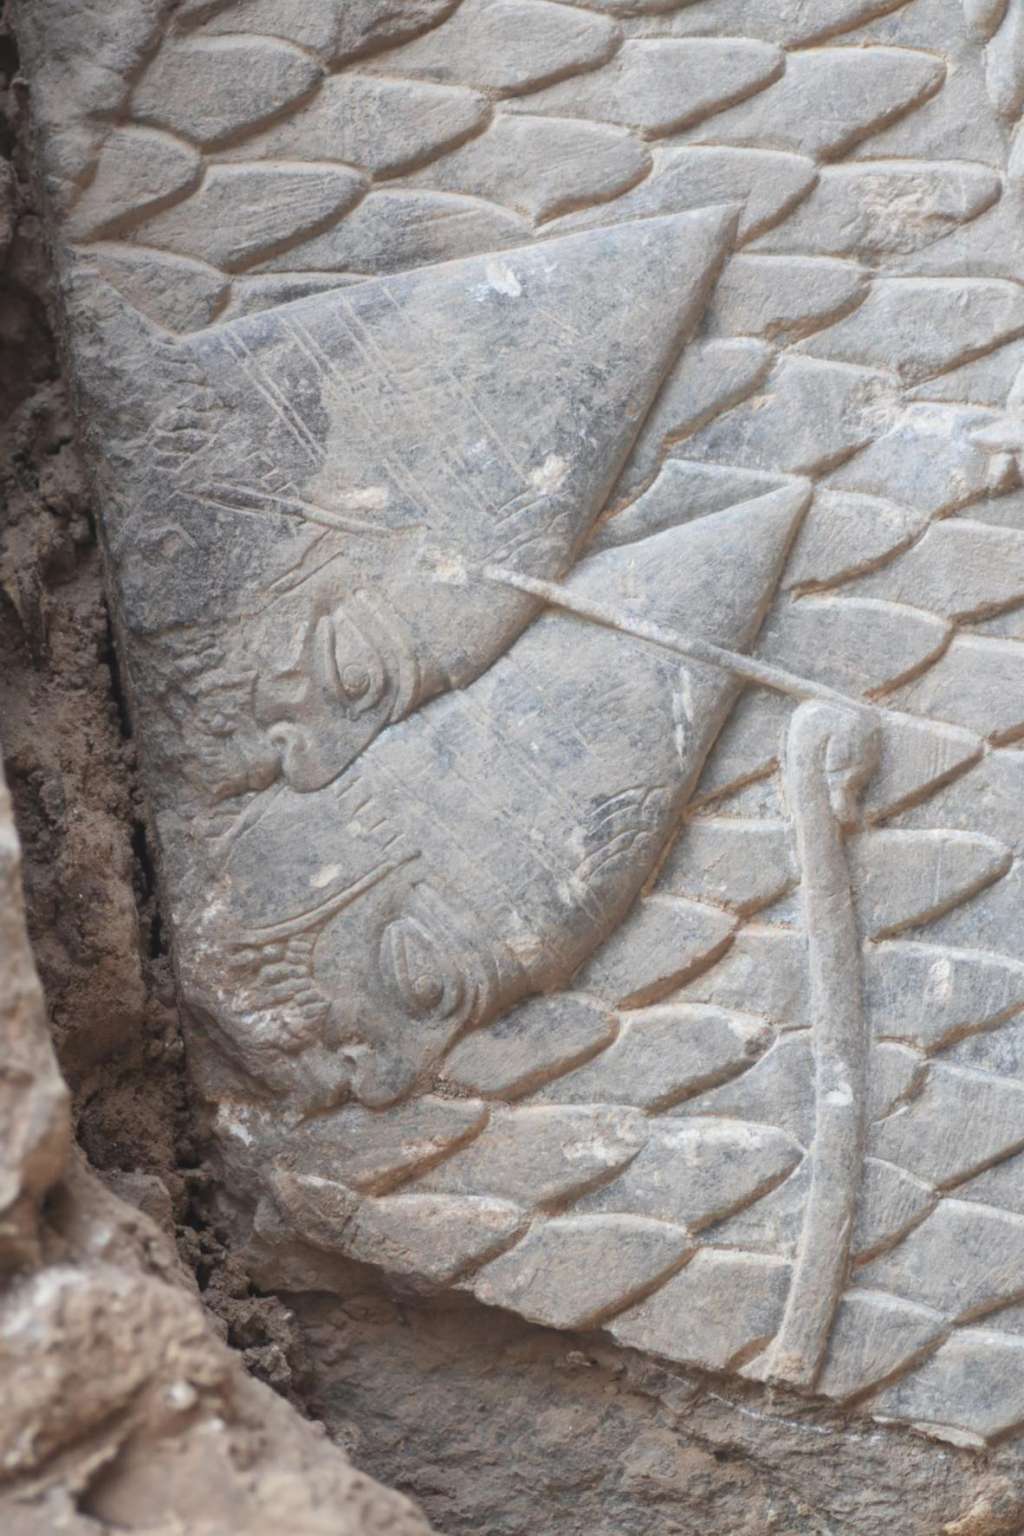 U Iraku pronađene kamene rezbarije stare 2.700 godina